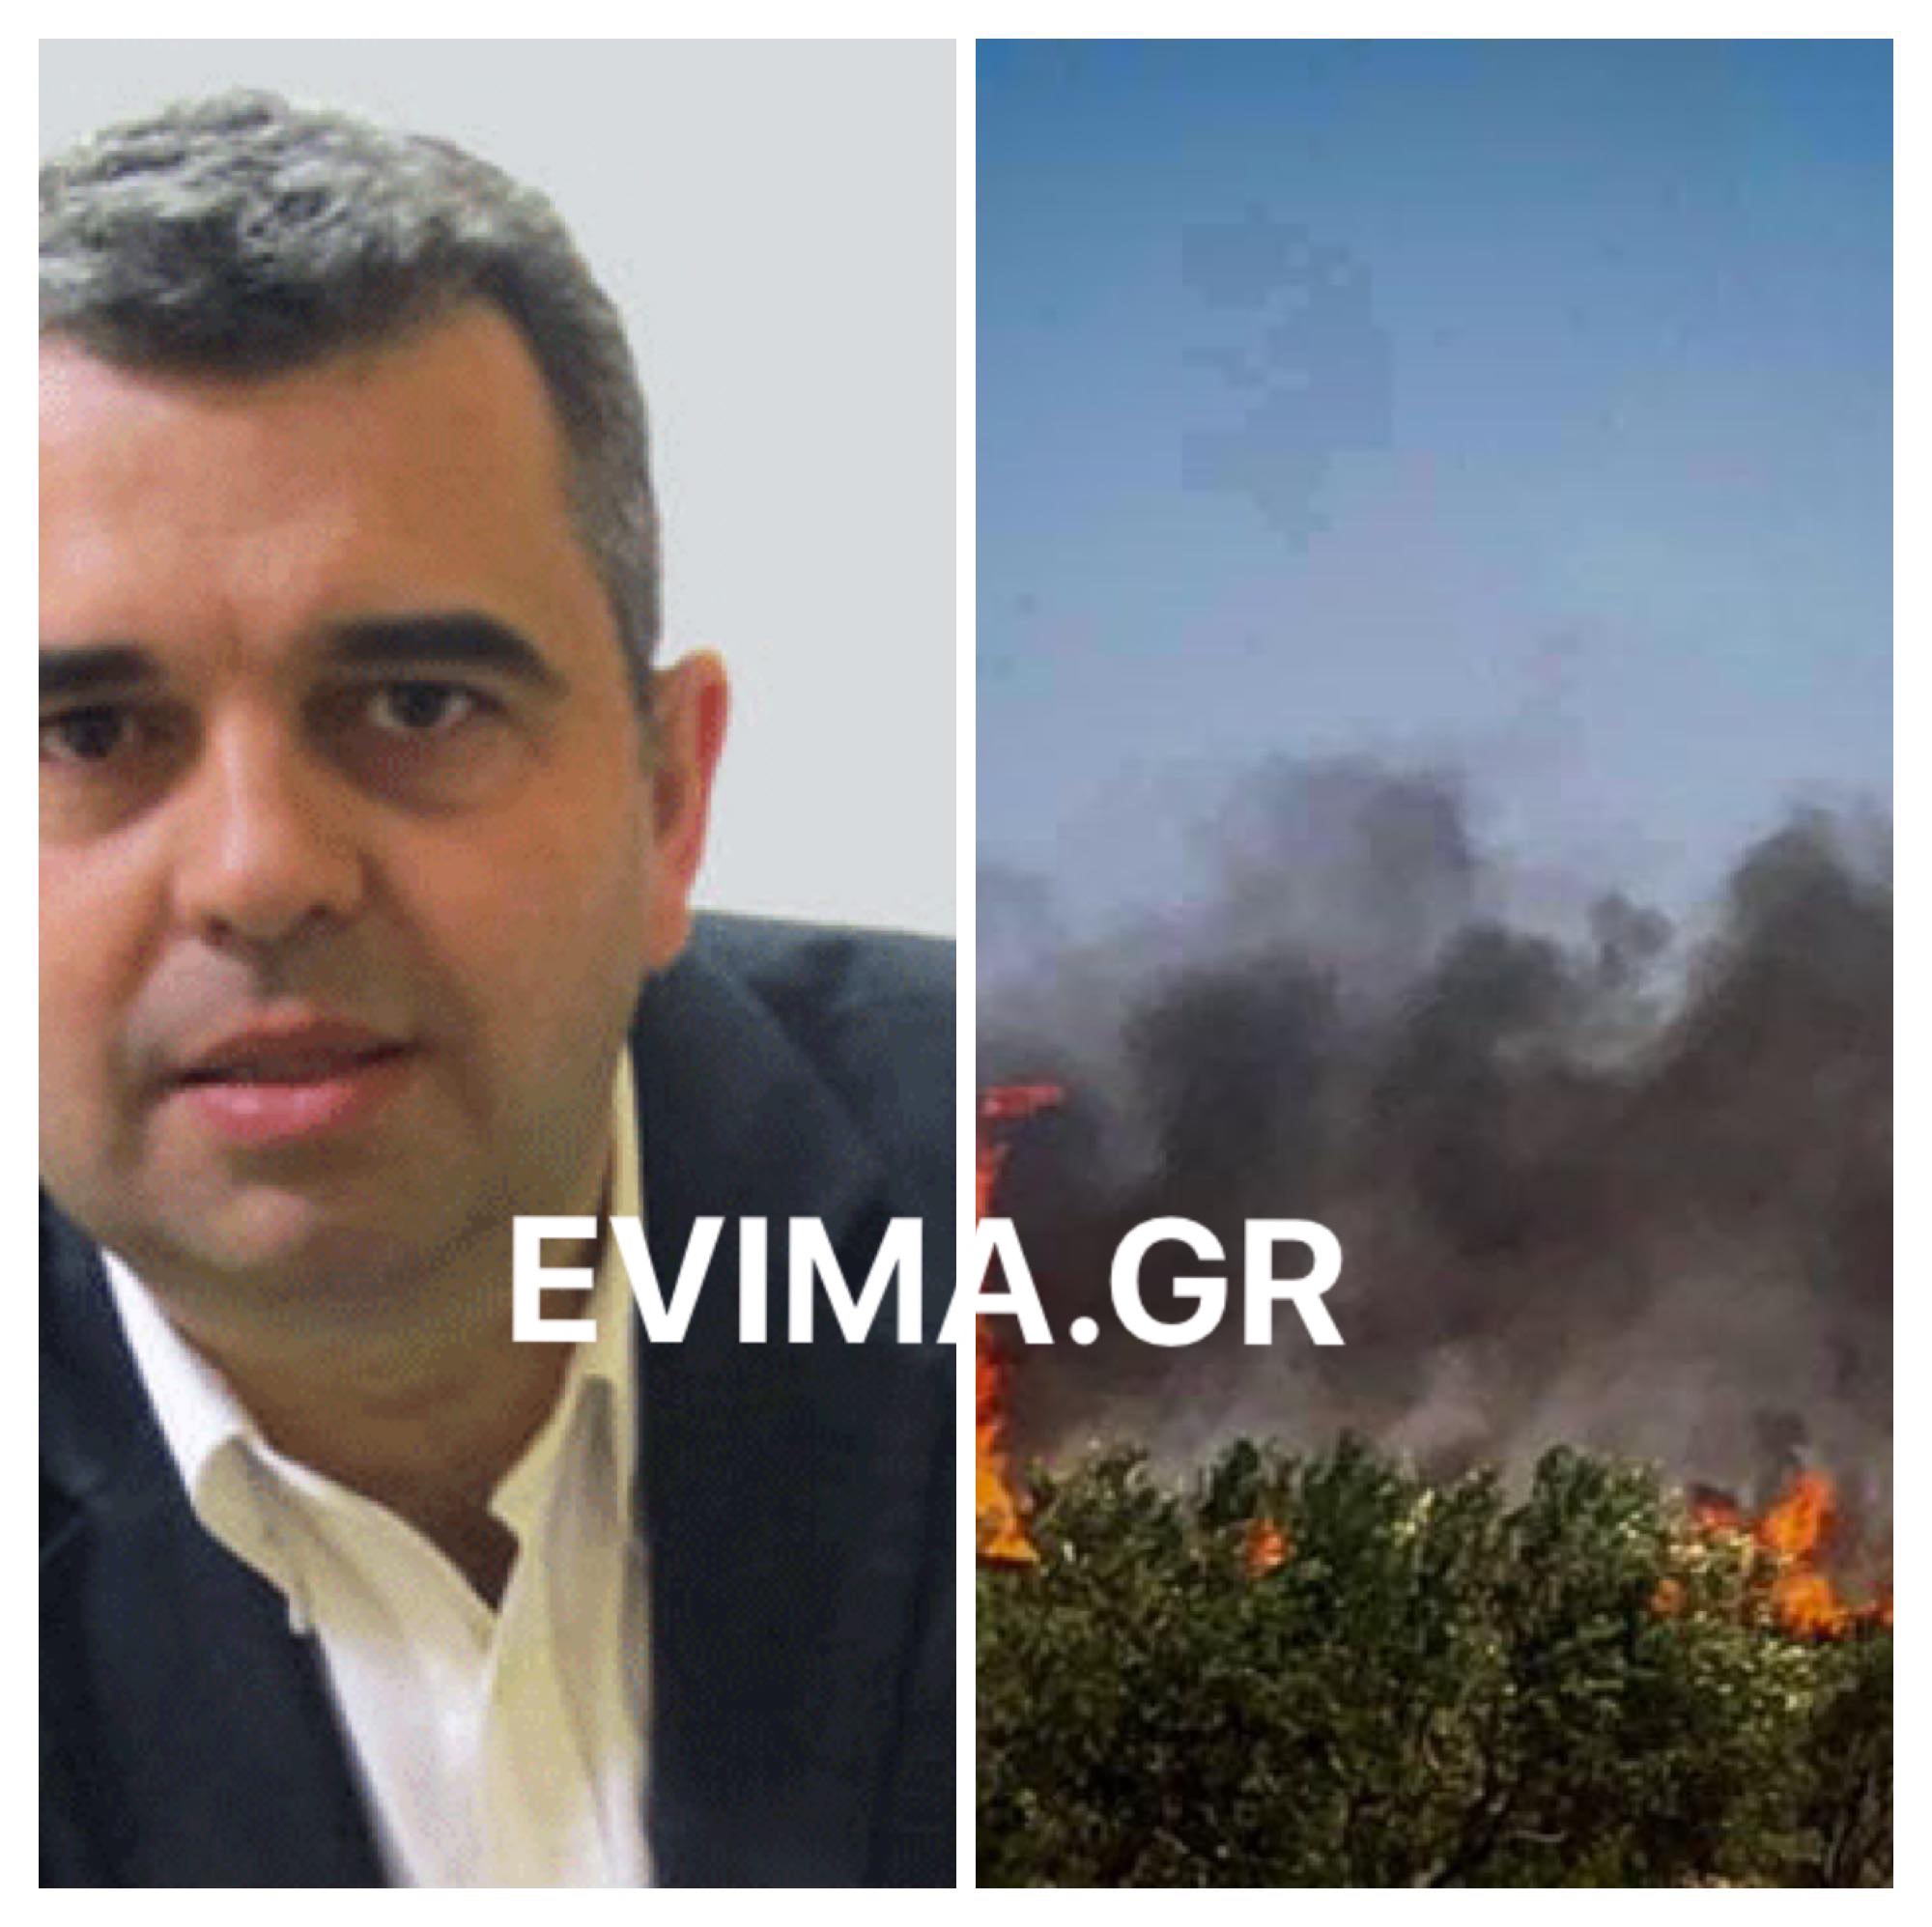 Δήμαρχος Καρύστου στο evima:Υπό έλεγχο η νέα φωτιά στο Κατσαρώνι